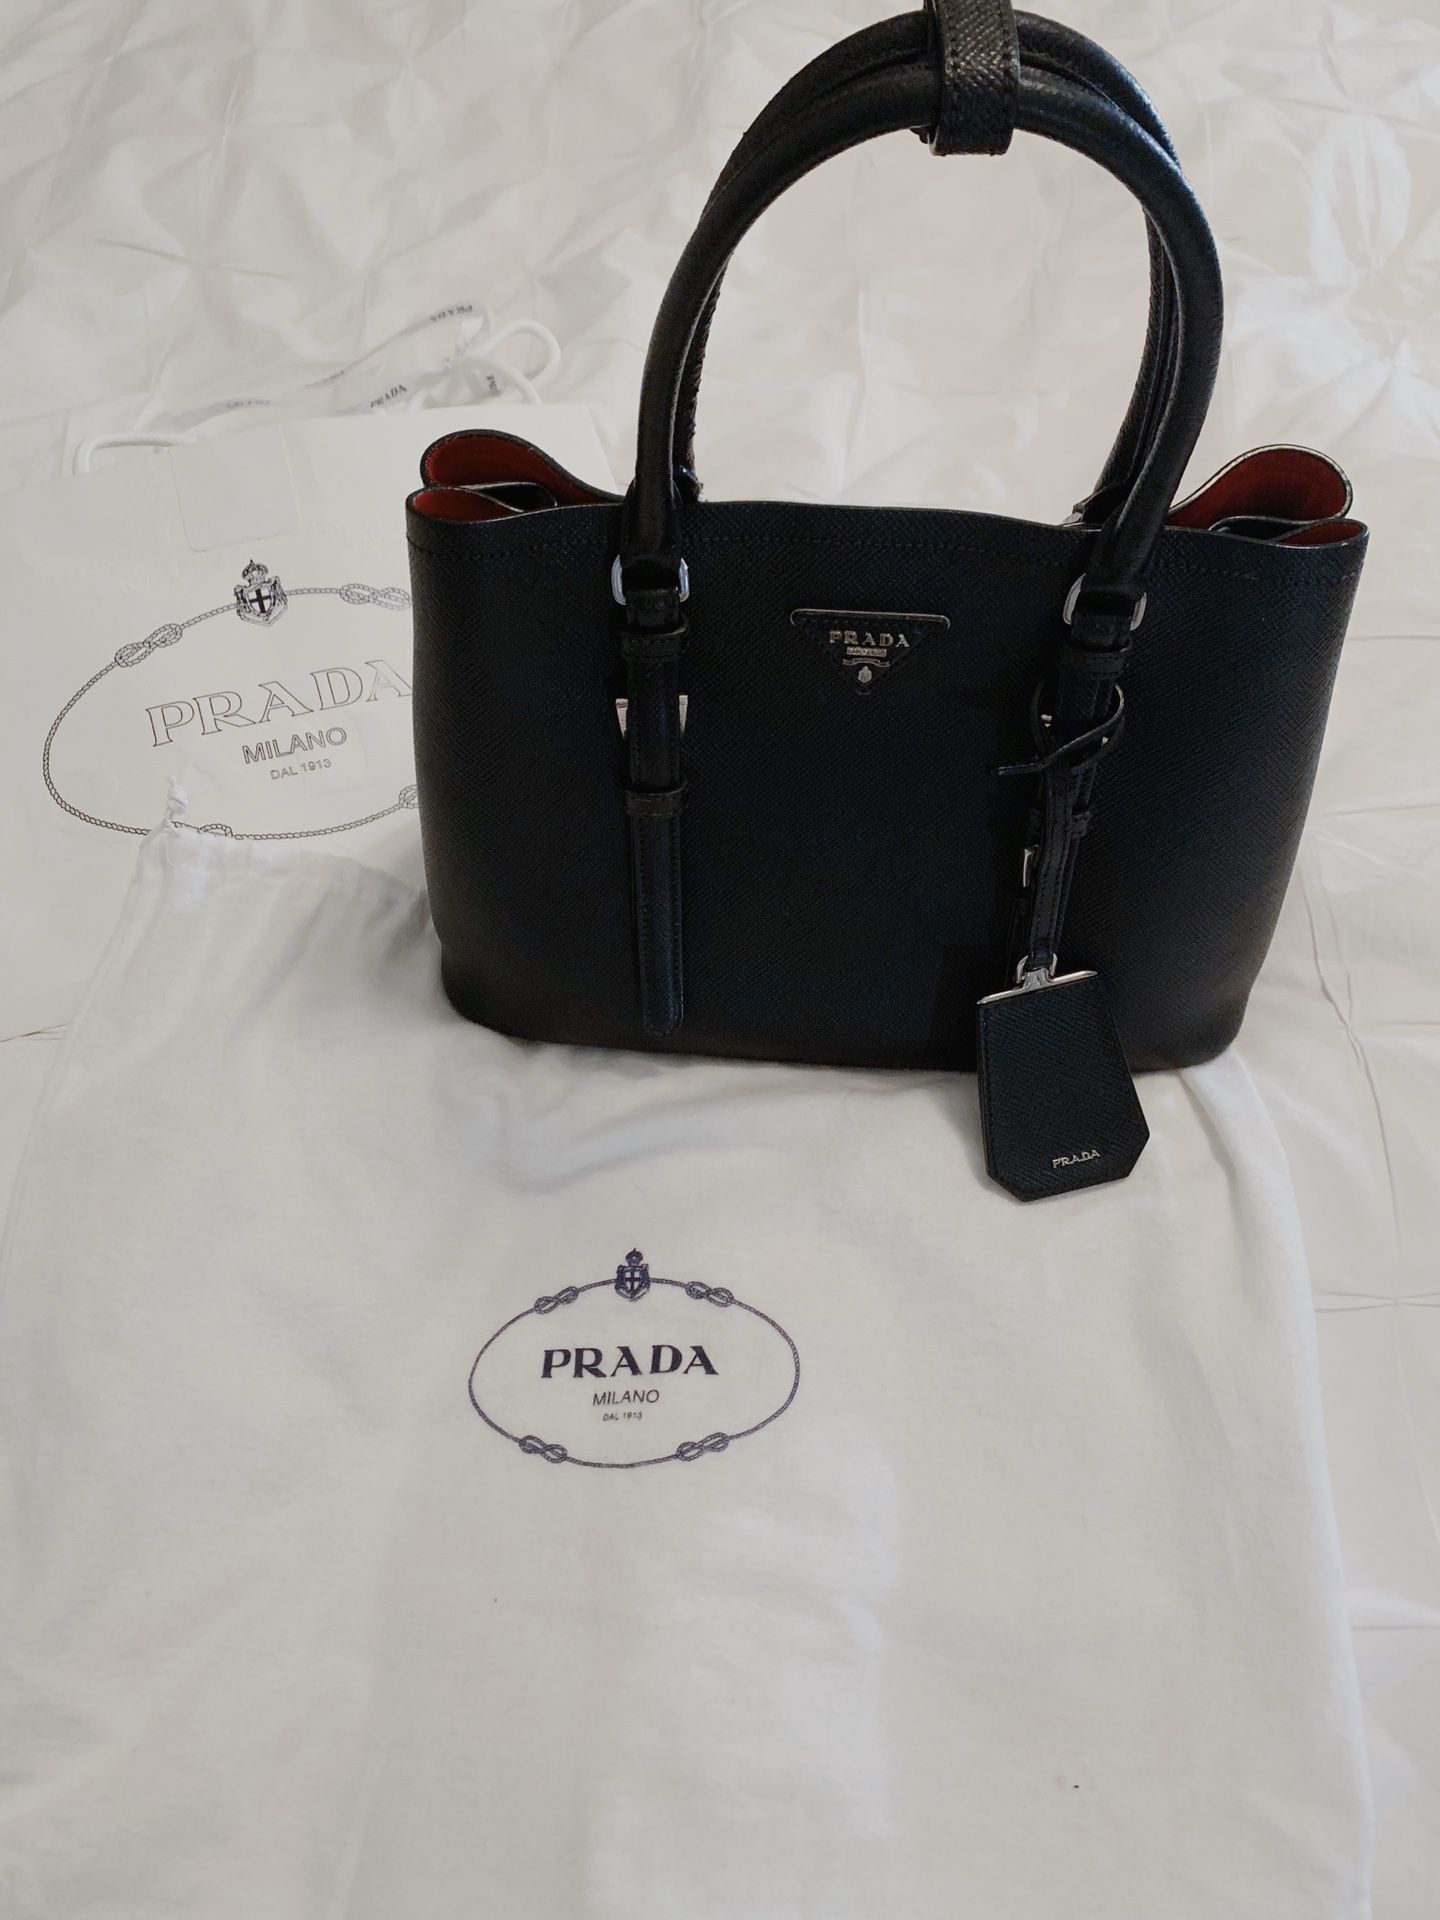 Prada Double Bag (Saffiano Leather Handbag/ Crossbody)